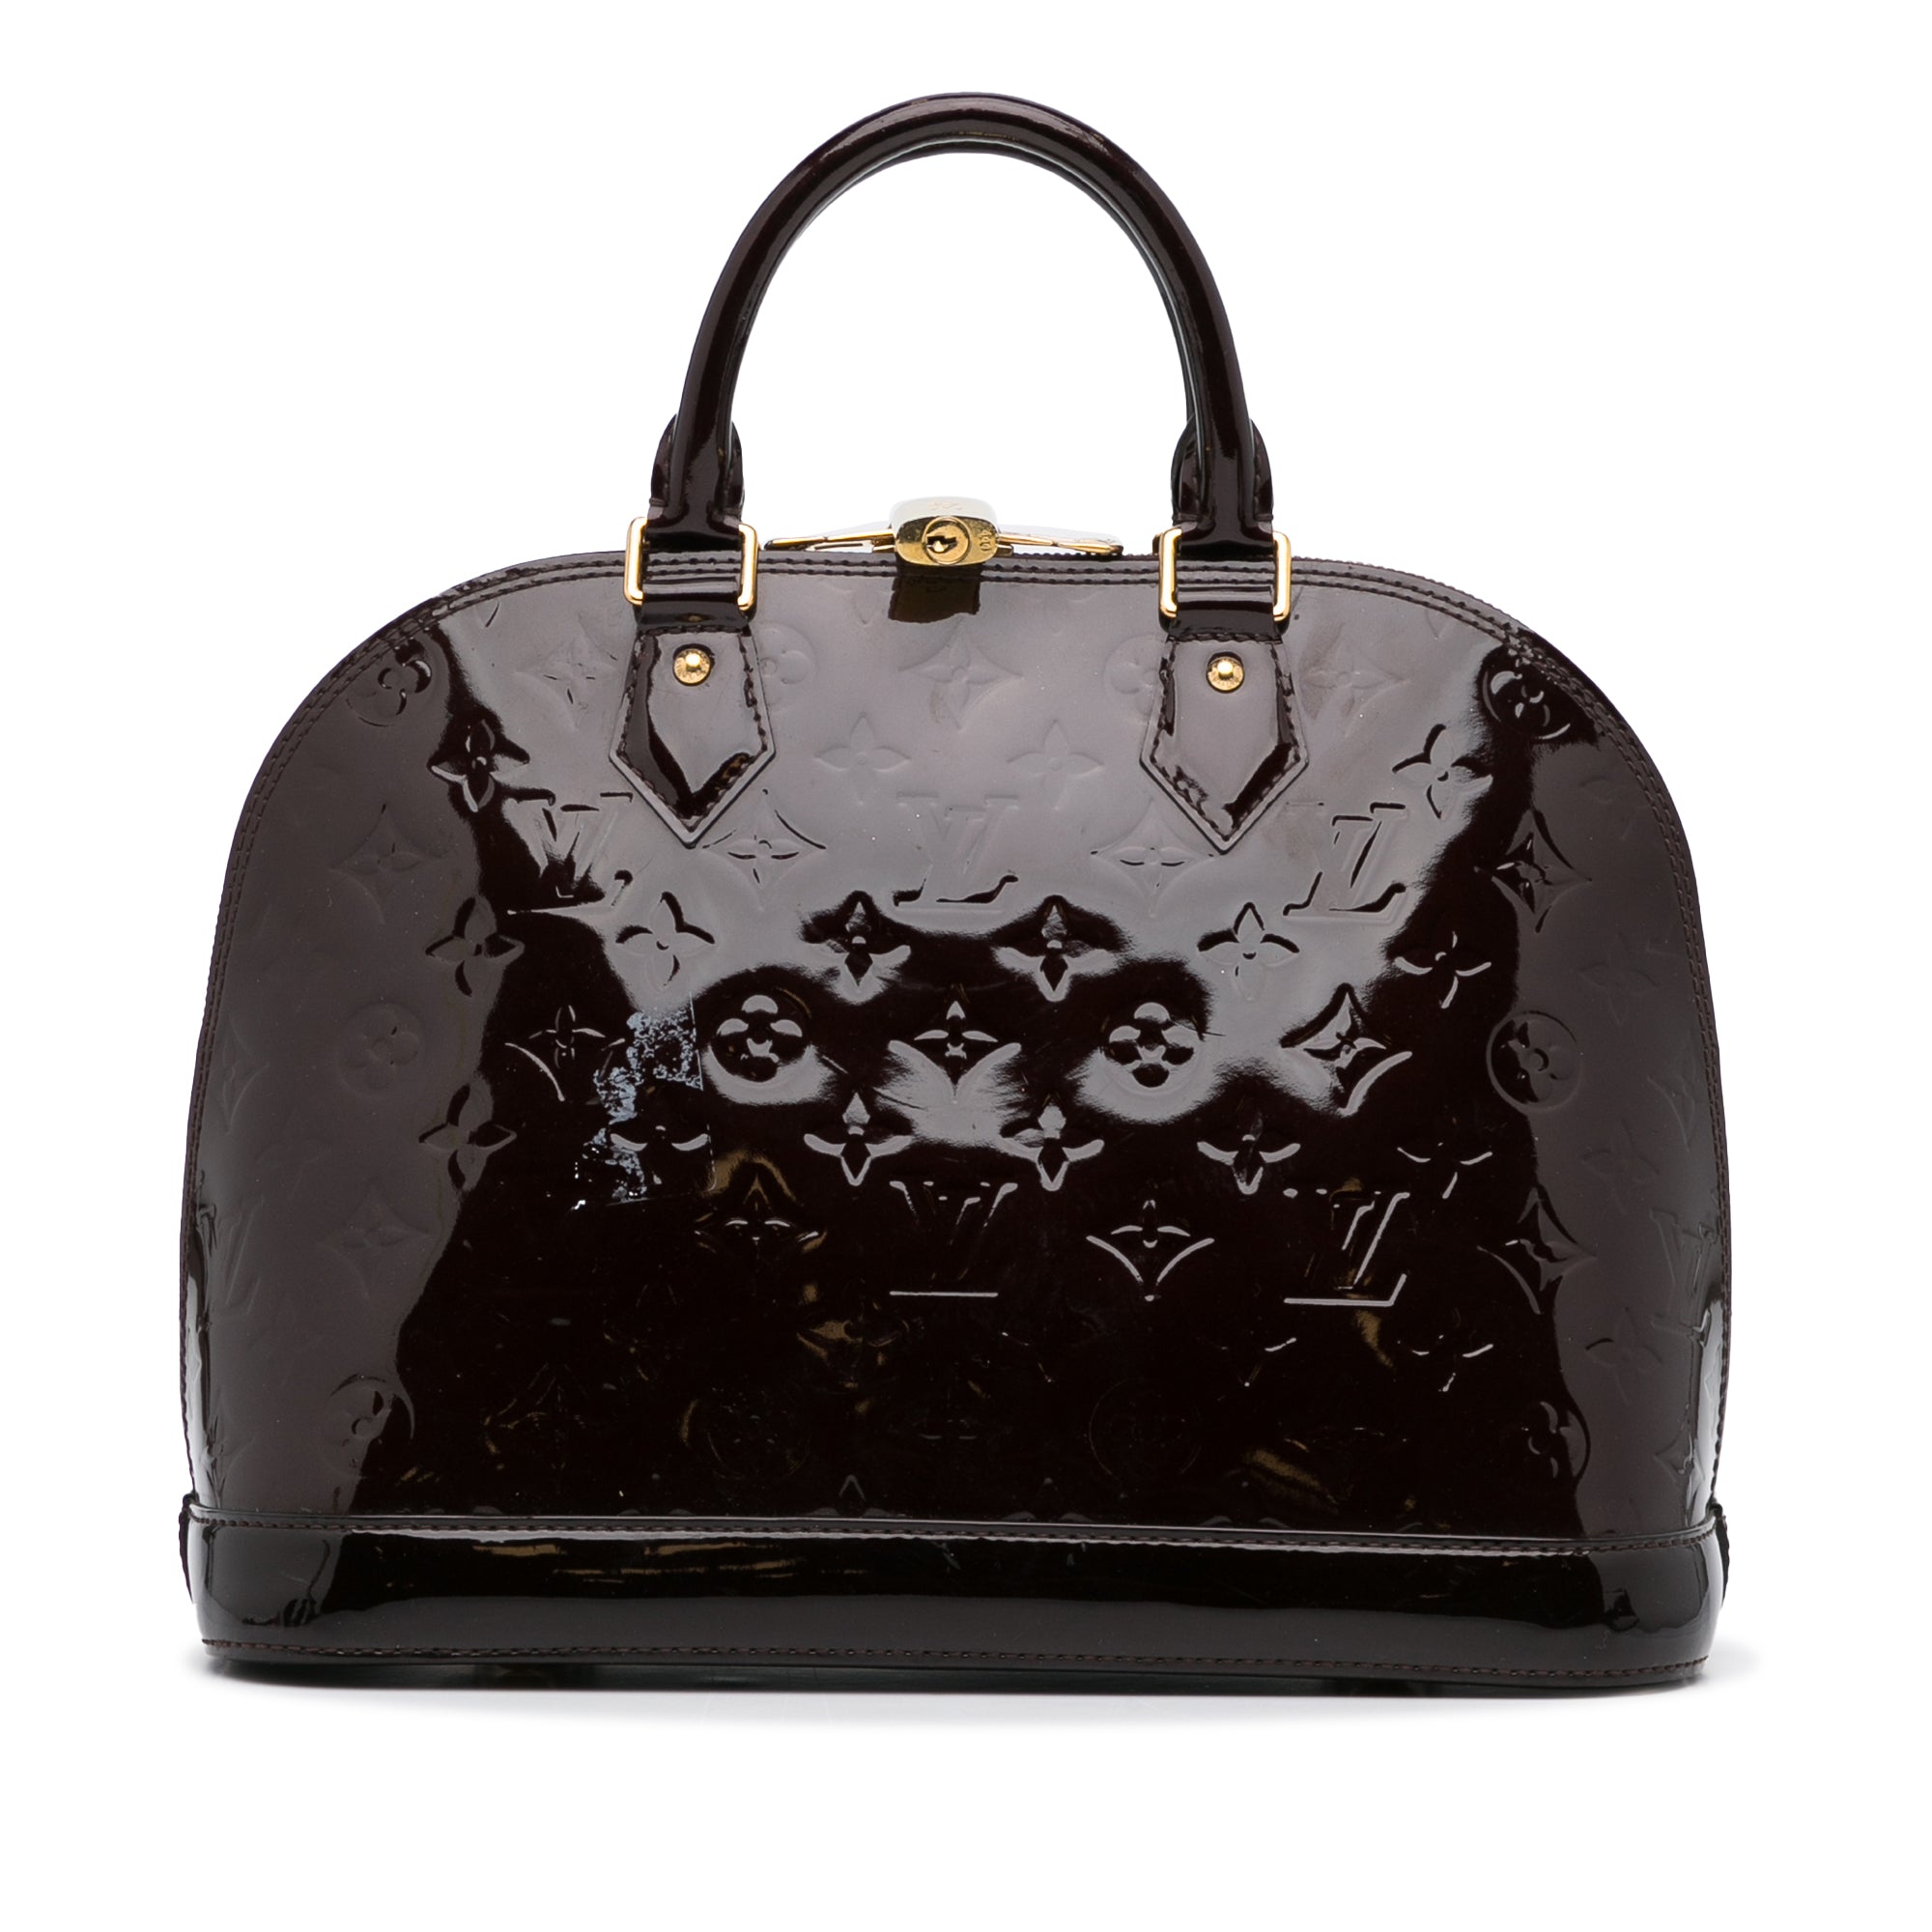 Louis Vuitton Bellevue Pm Purple Patent Leather Shoulder Bag (Pre-Owne